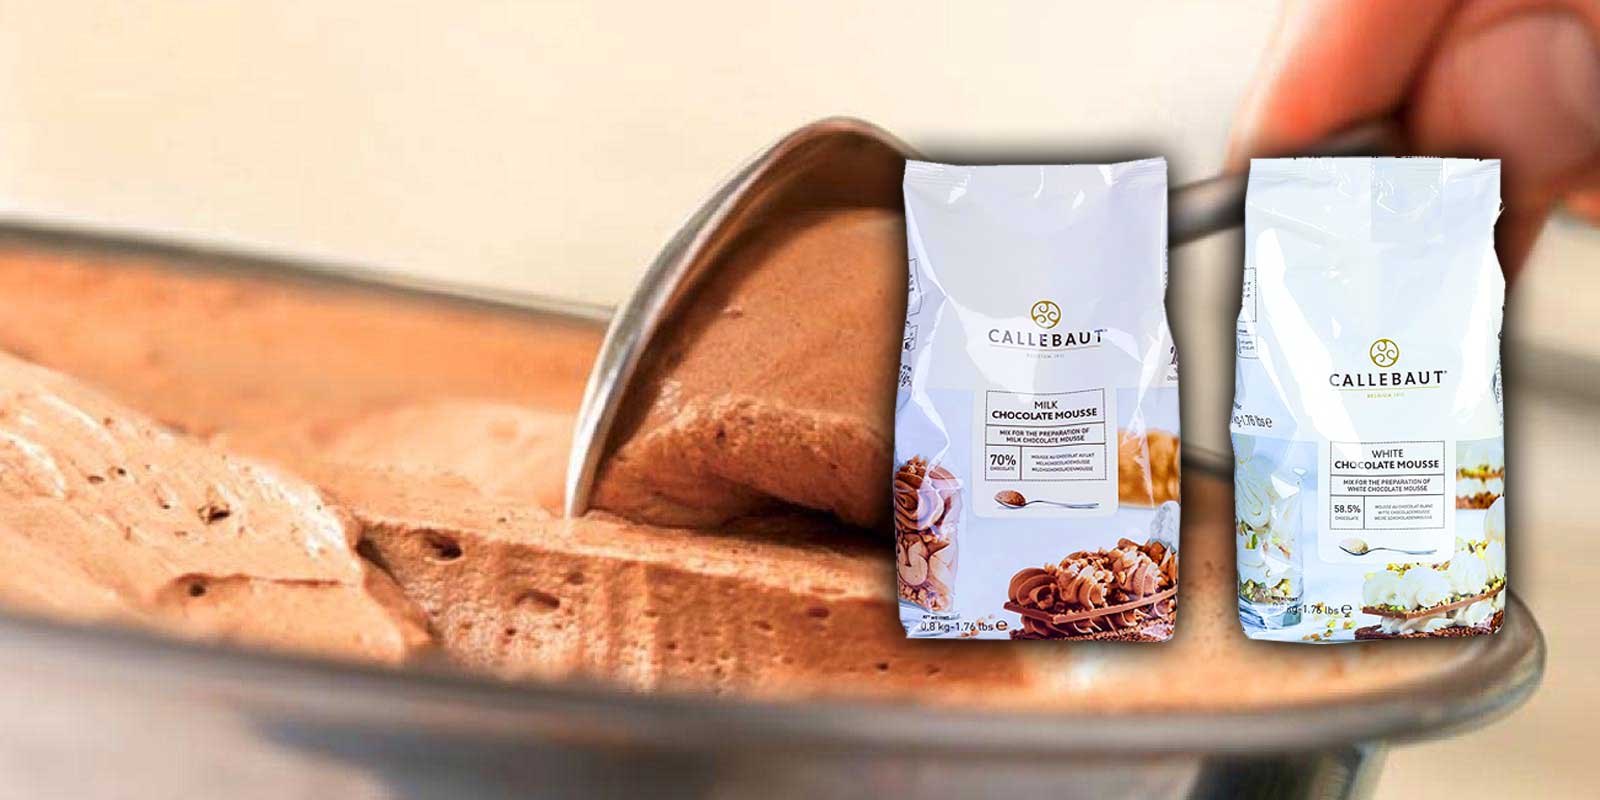 Mousse pulver och sprod fran Callebaut Callebaut vill forse varje konditor med fantastisk choklad och stotta dig i det du alskar mest - att gora underbara chokladlackerheter for dina kunder och vanner, det ar Callebauts mal. Allt borjade 1911 i en liten belgisk stad som heter Wieze.